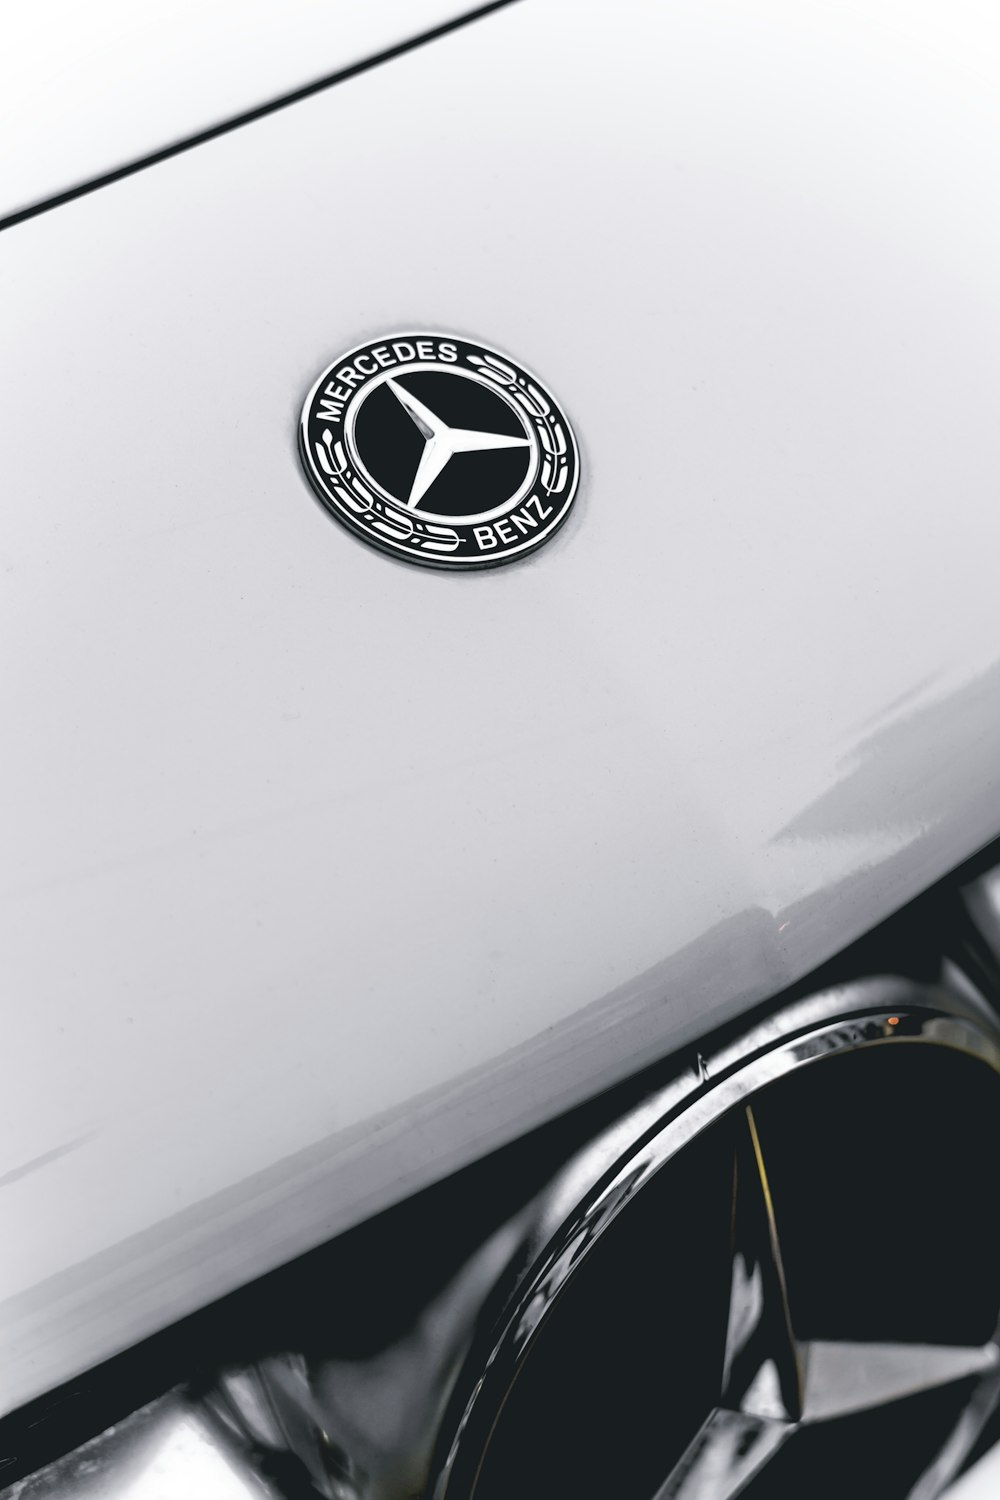 Eine Nahaufnahme eines Mercedes-Emblems auf einem Auto